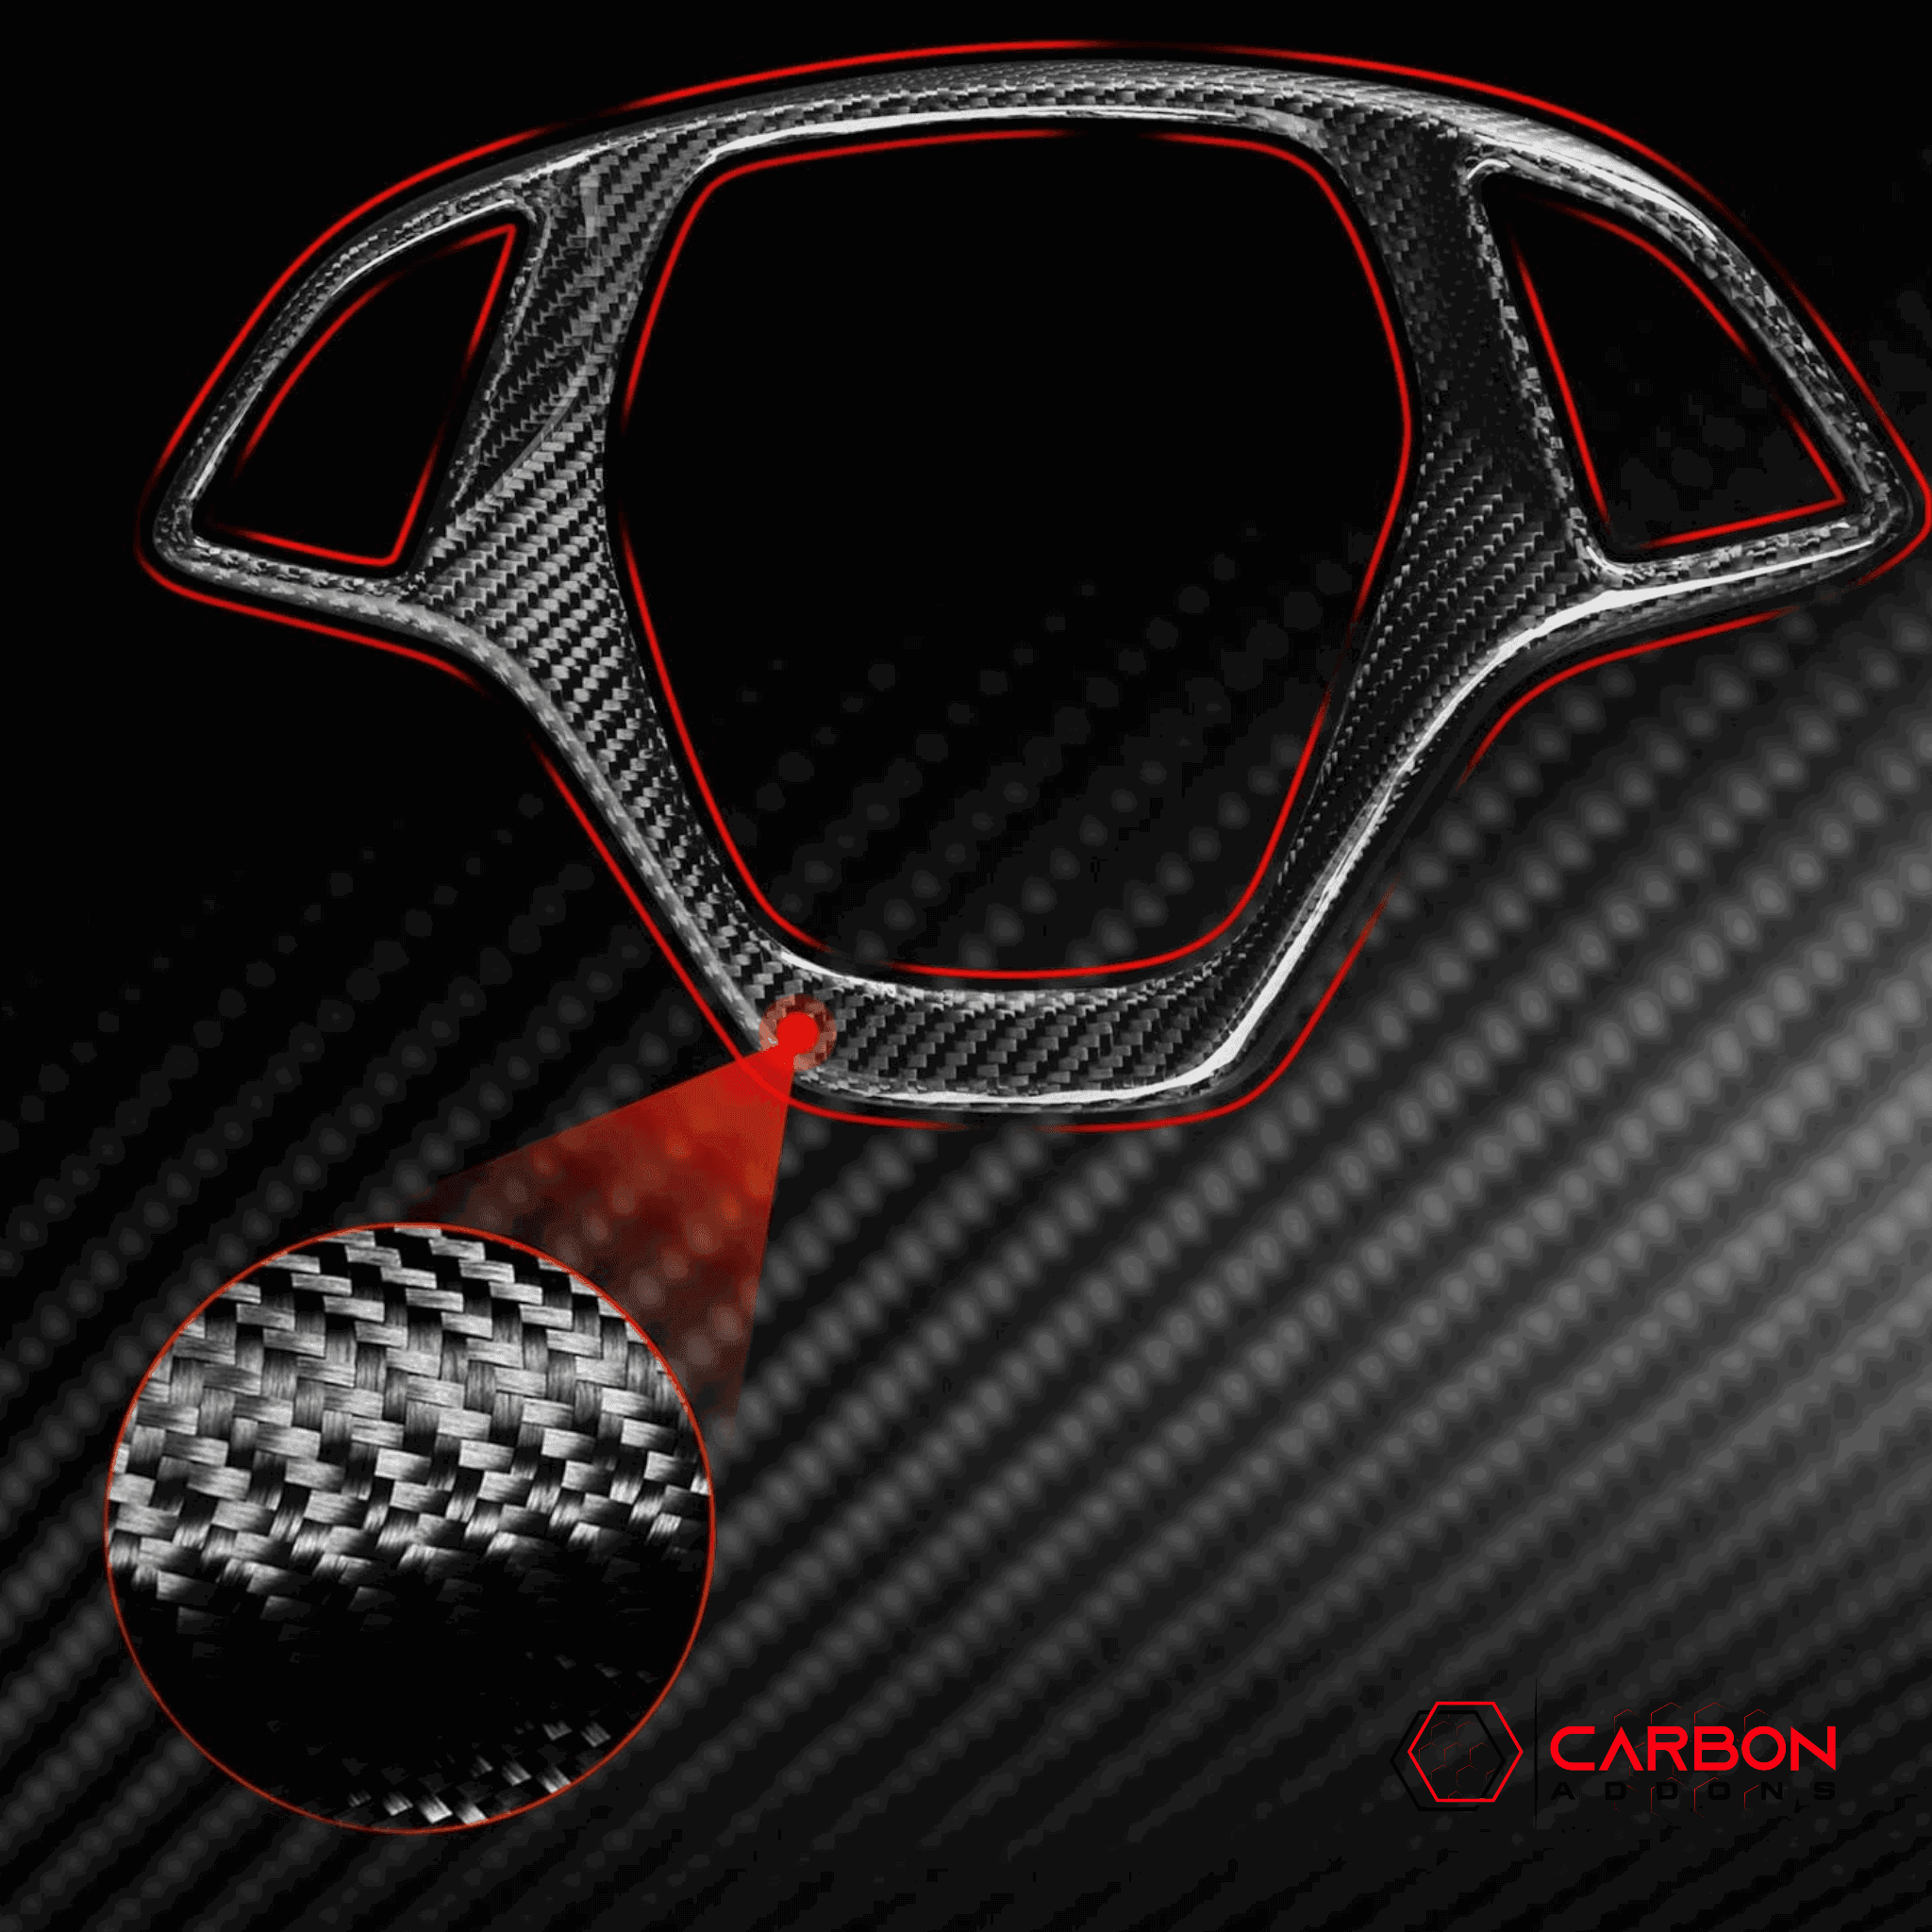 C7 Corvette 2014-2019 Carbon Fiber Steering Wheel Button Trim Cover - carbonaddons Carbon Fiber Parts, Accessories, Upgrades, Mods